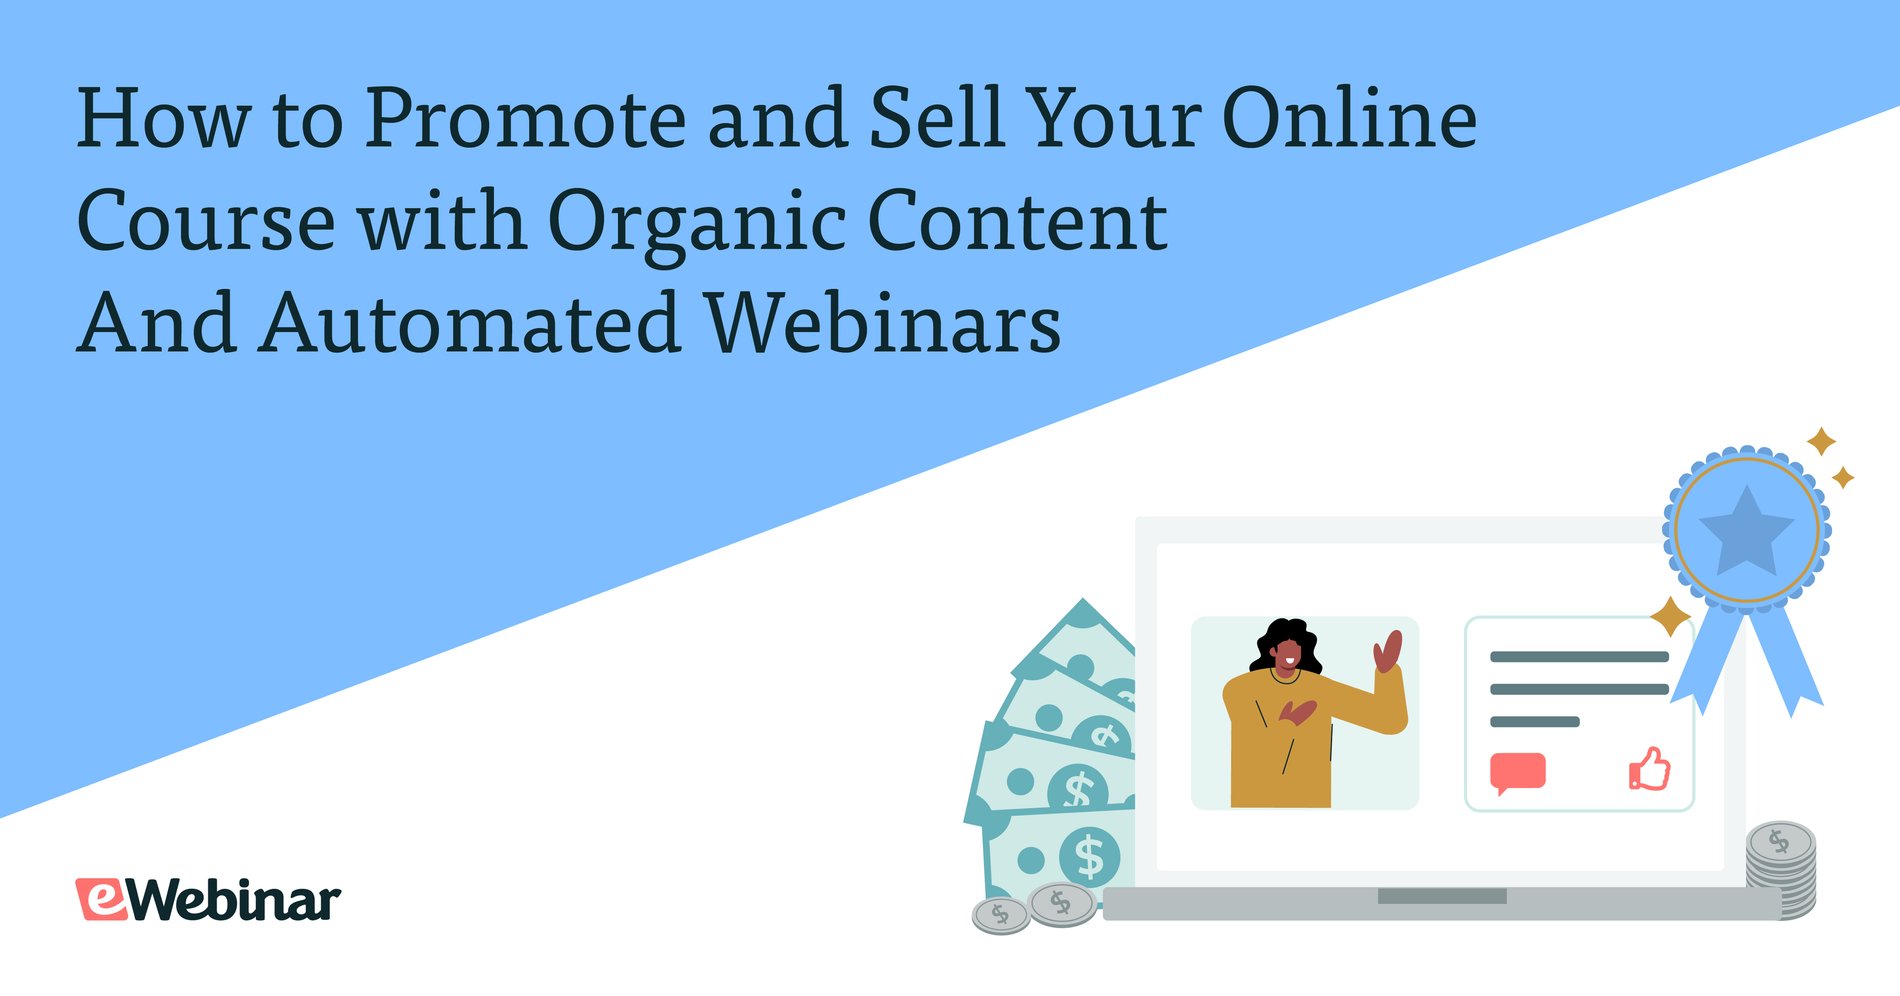 Cómo promocionar y vender tu curso online con contenido orgánico y webinars automatizados